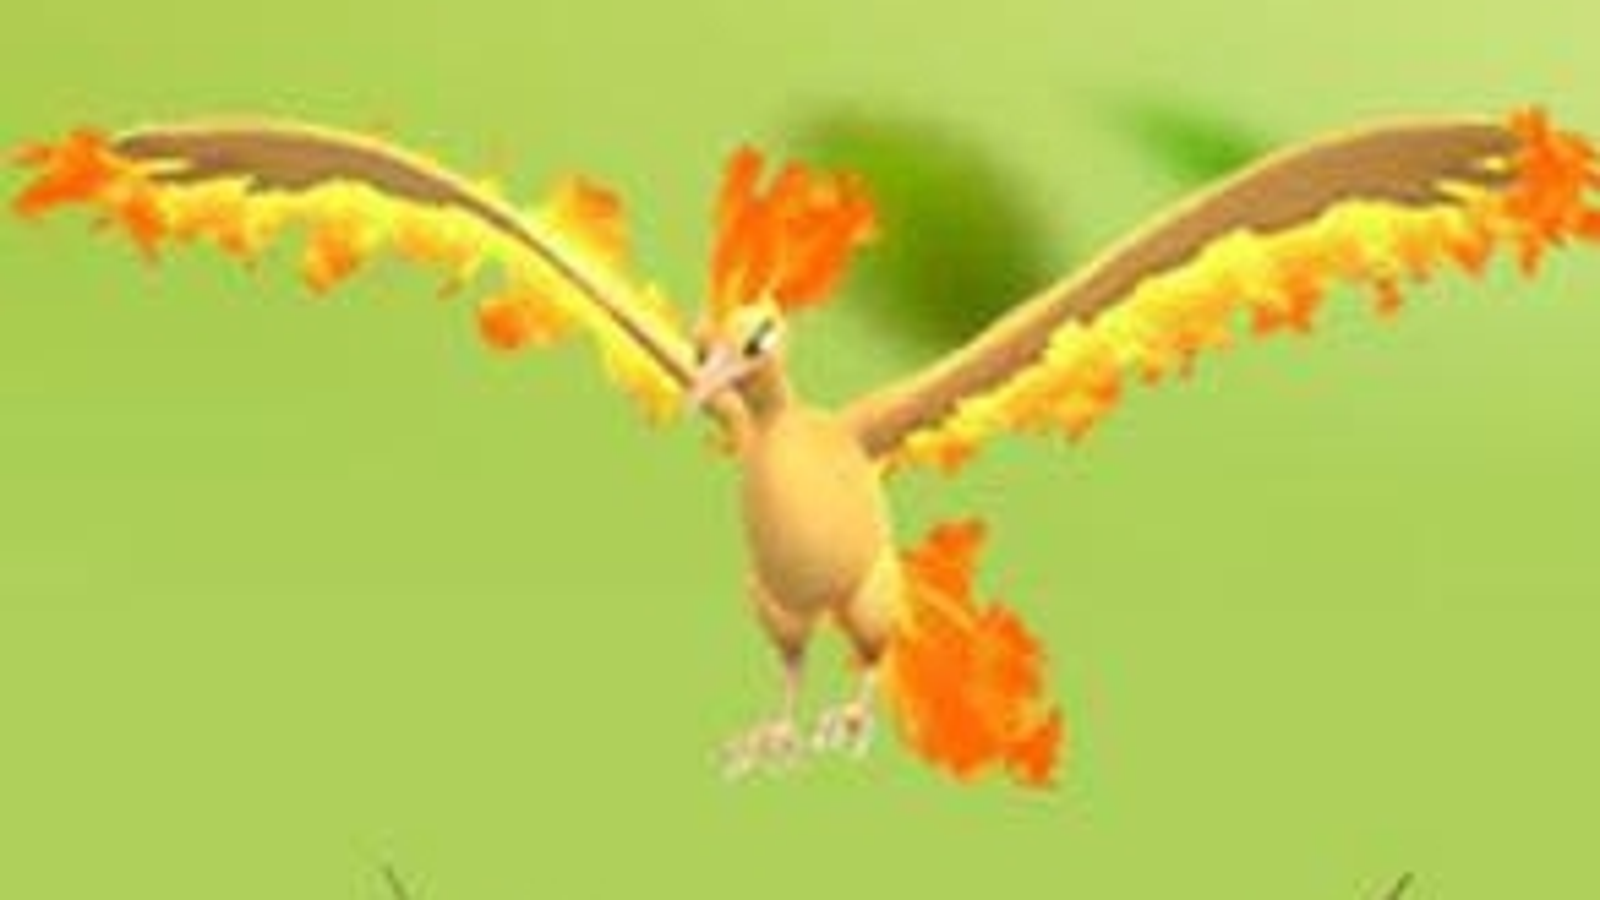 Pokémon Go Moltres, Zapdos, Articuno legendary bird raid times